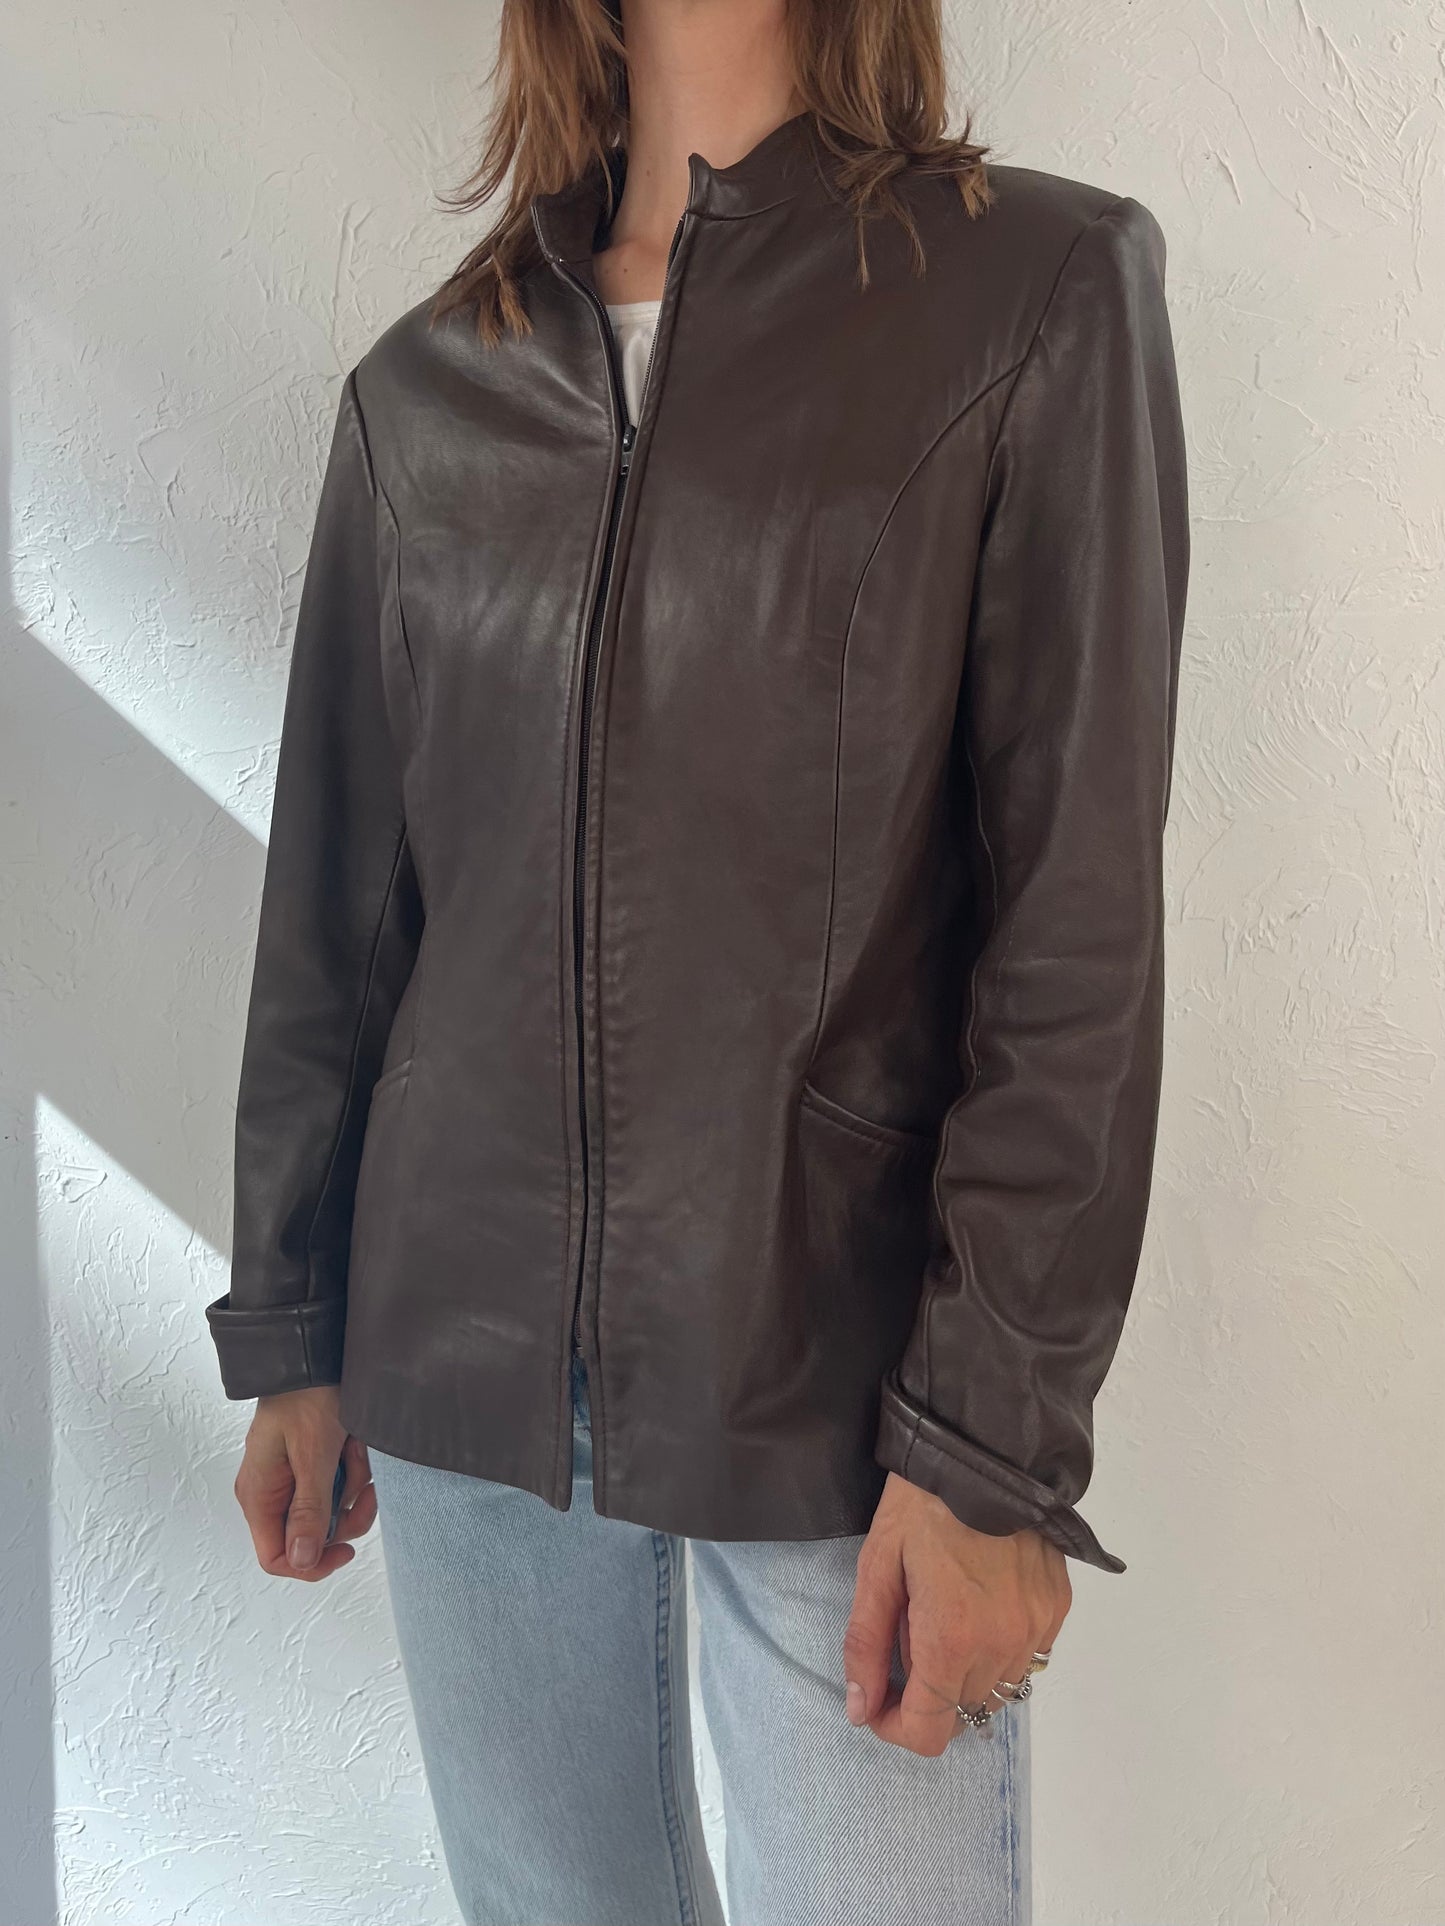 90s 'Danier' Brown Leather Zip Up Jacket / Medium